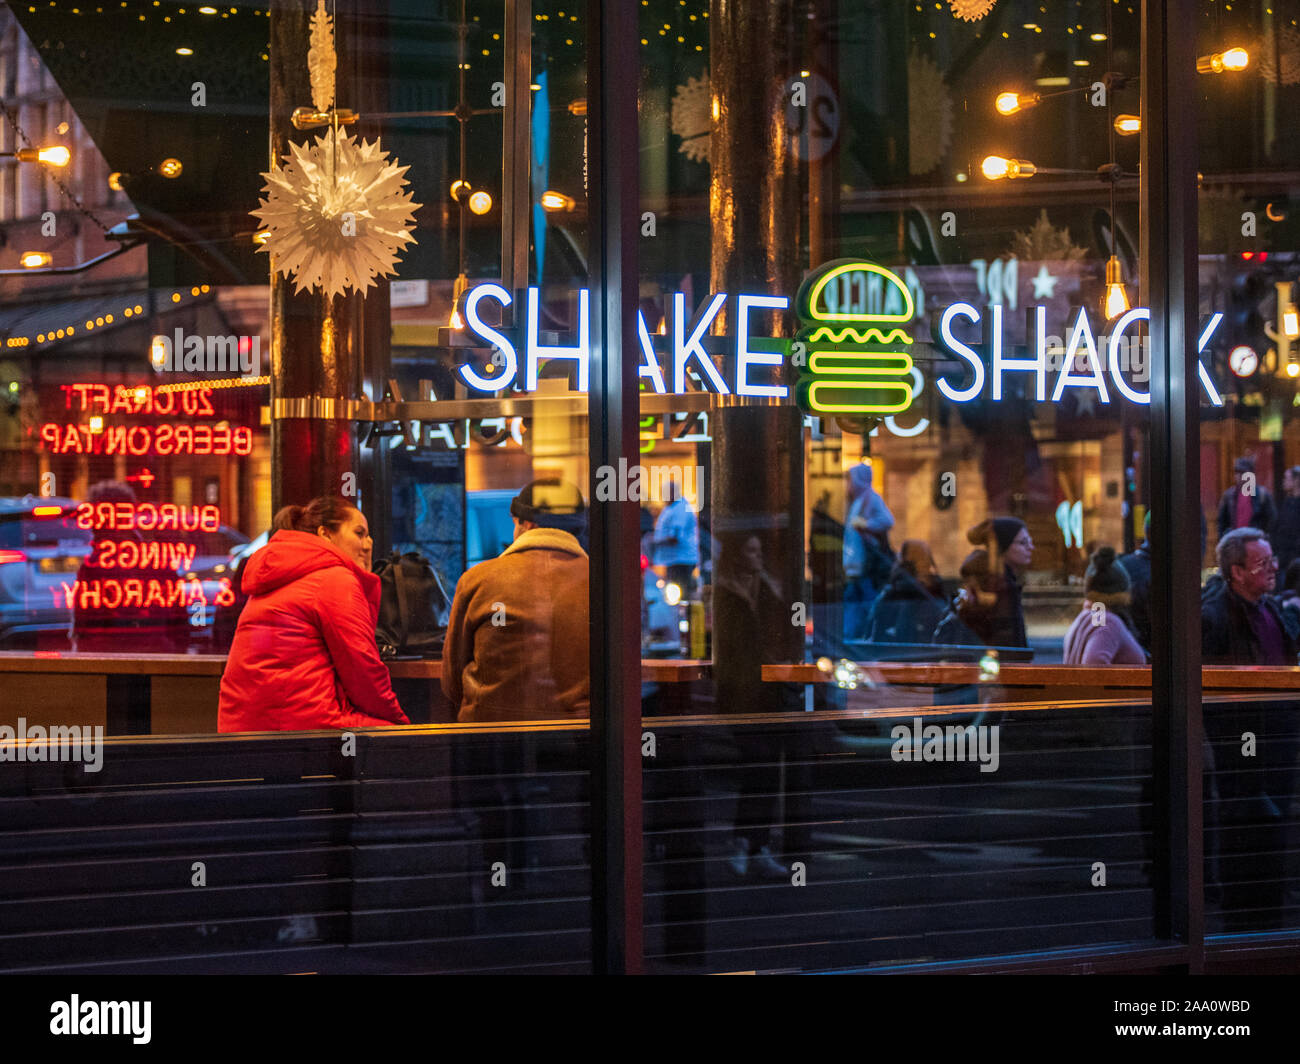 Shake shack Banque de photographies et d'images à haute résolution - Alamy